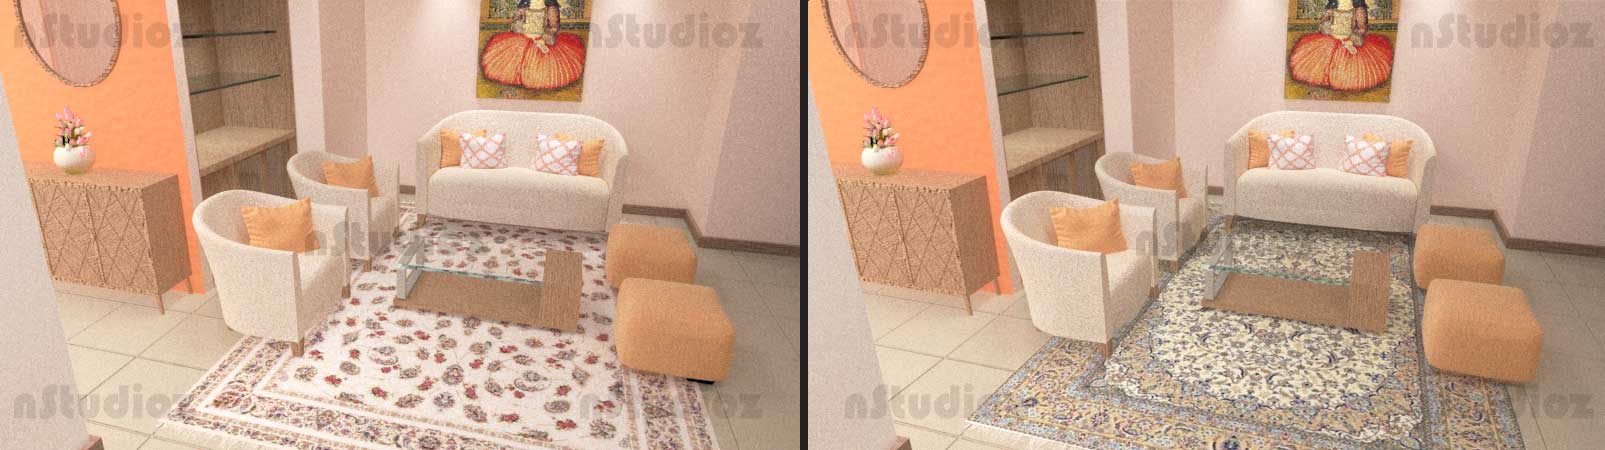 مقایسه فرش با طرح ریز و شلوغ و درشت و خلوت در فضای خانه